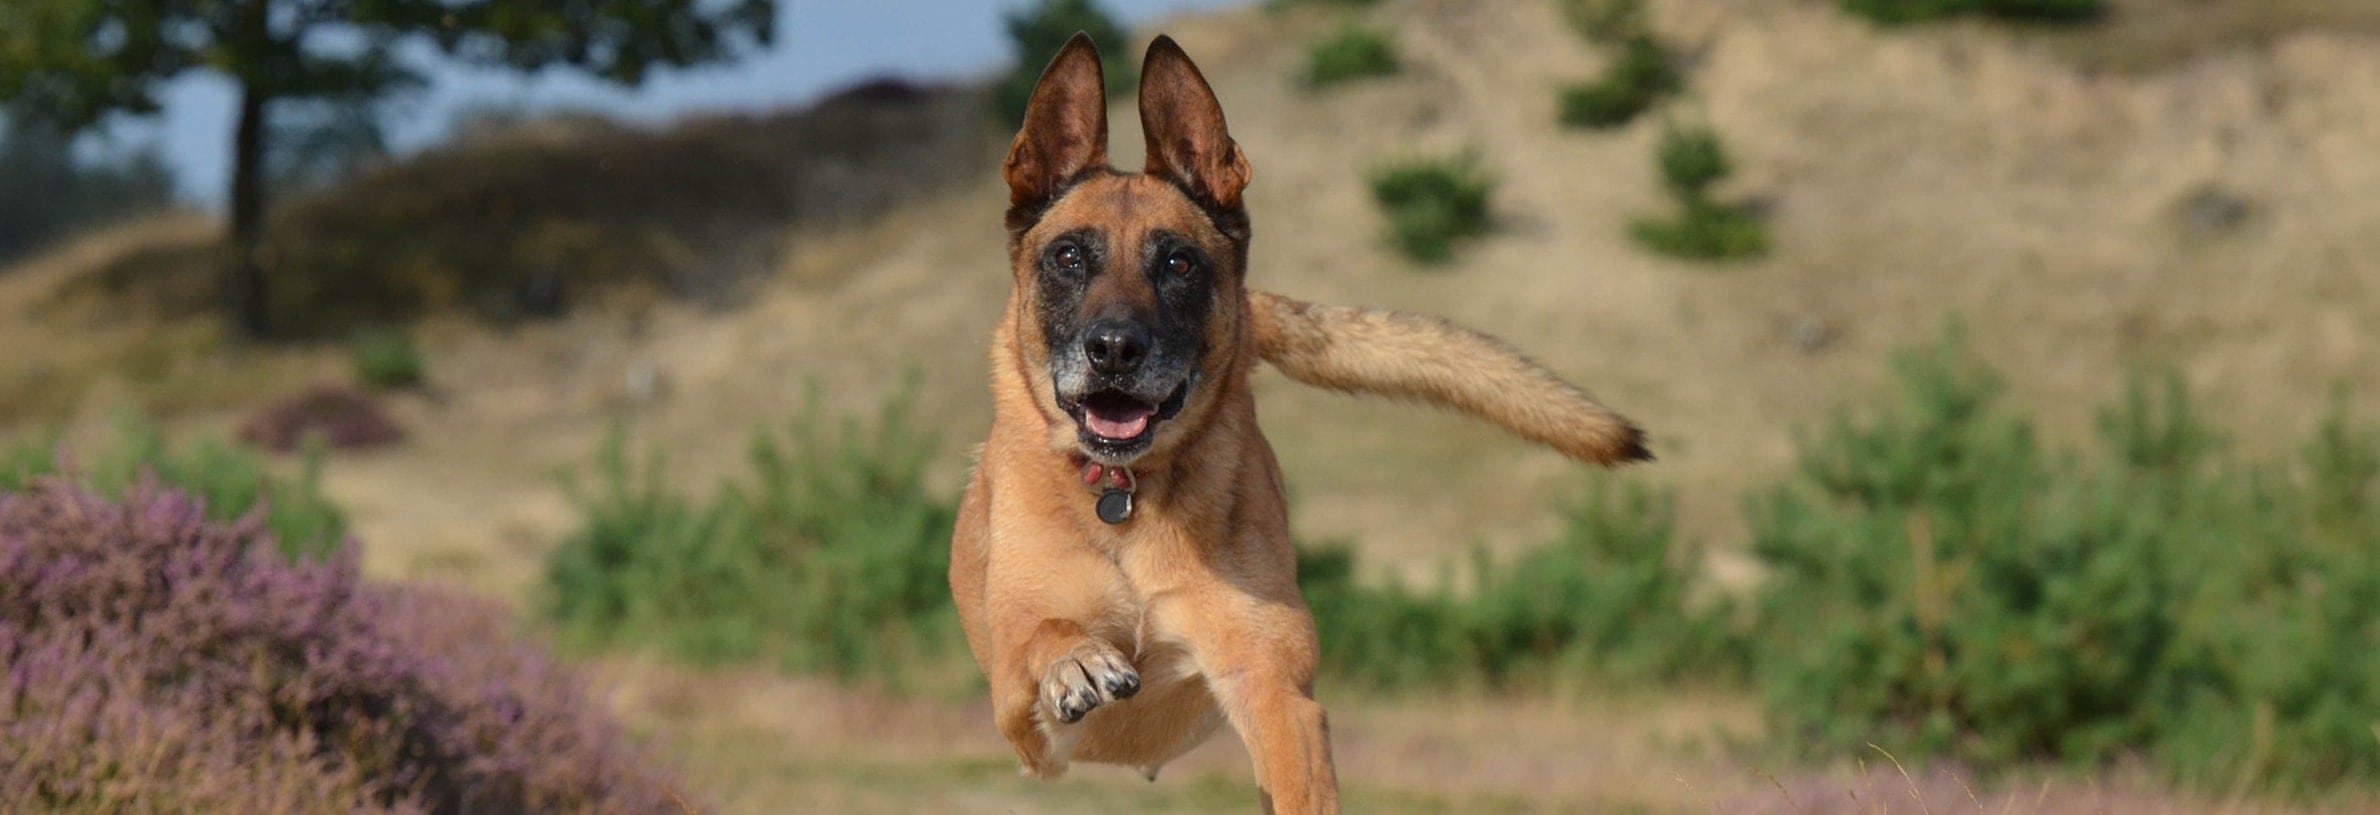 Hardlopen met hond: 7 nuttige tips!